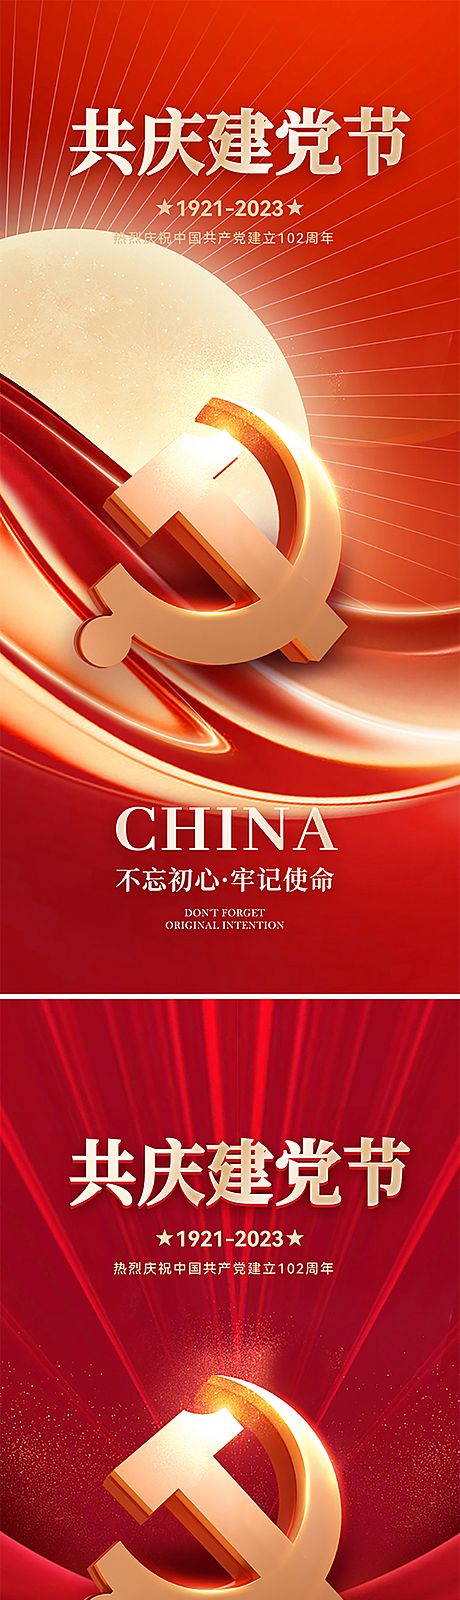 仙图网-建党节102周年海报